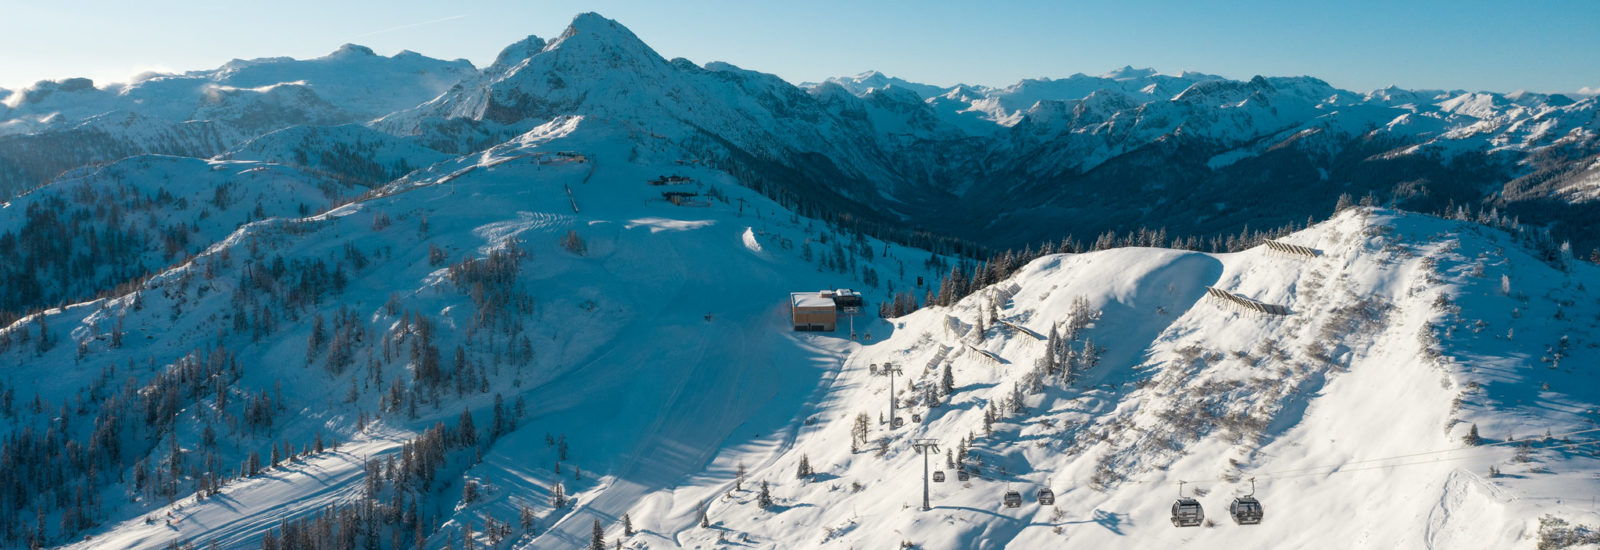 Panorama Link verbindet die Skigebiete der Weltmeister Väter © Wagrain-Kleinarl Tourismus